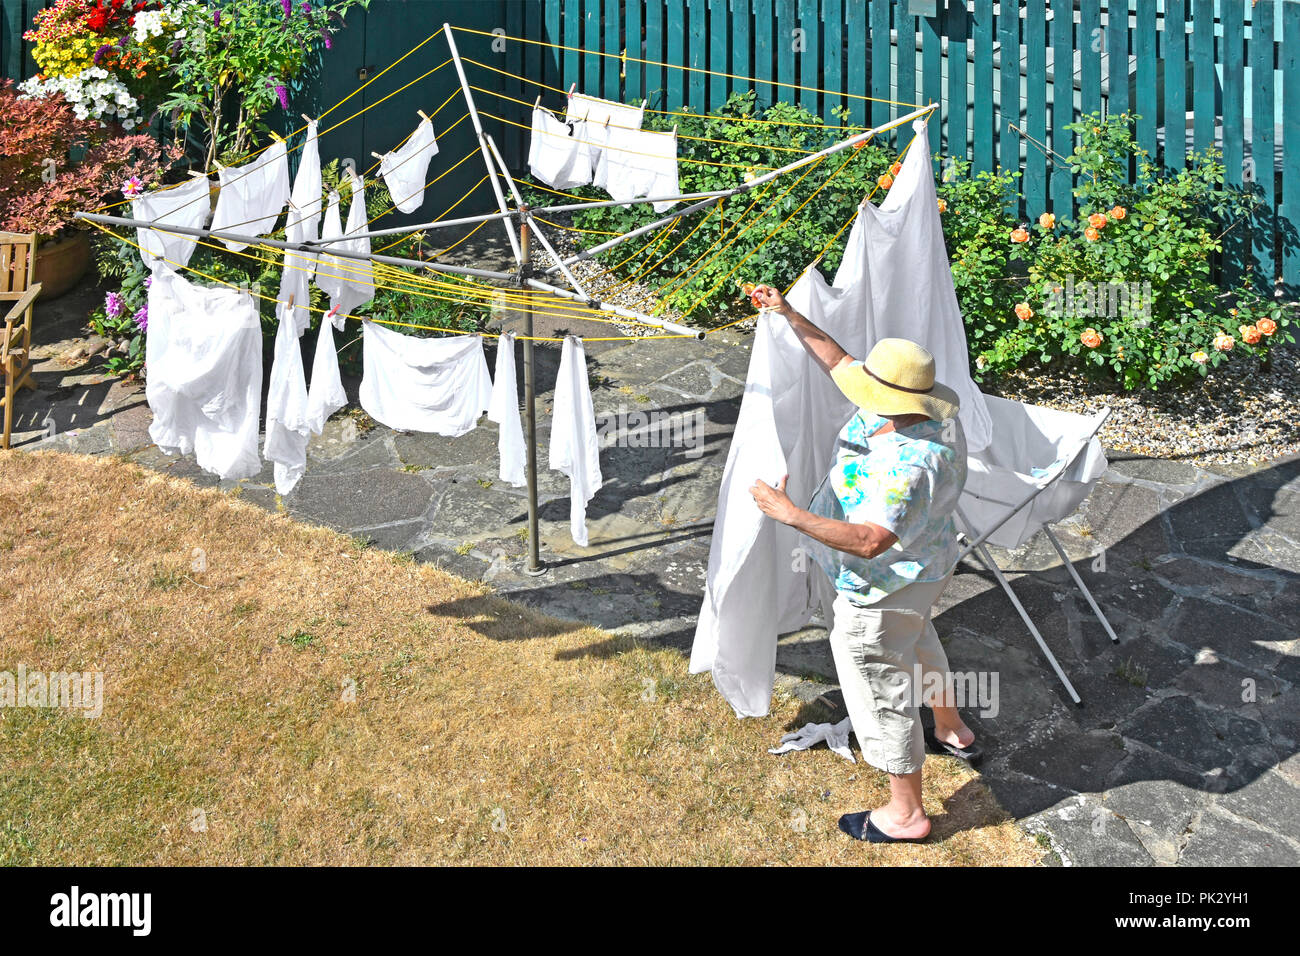 L'été 2018 à chaud vers le bas sur l'arrière jardin pelouse sèche desséché & young woman wearing sun hat hanging lave sur le rotary clothes line England UK Banque D'Images